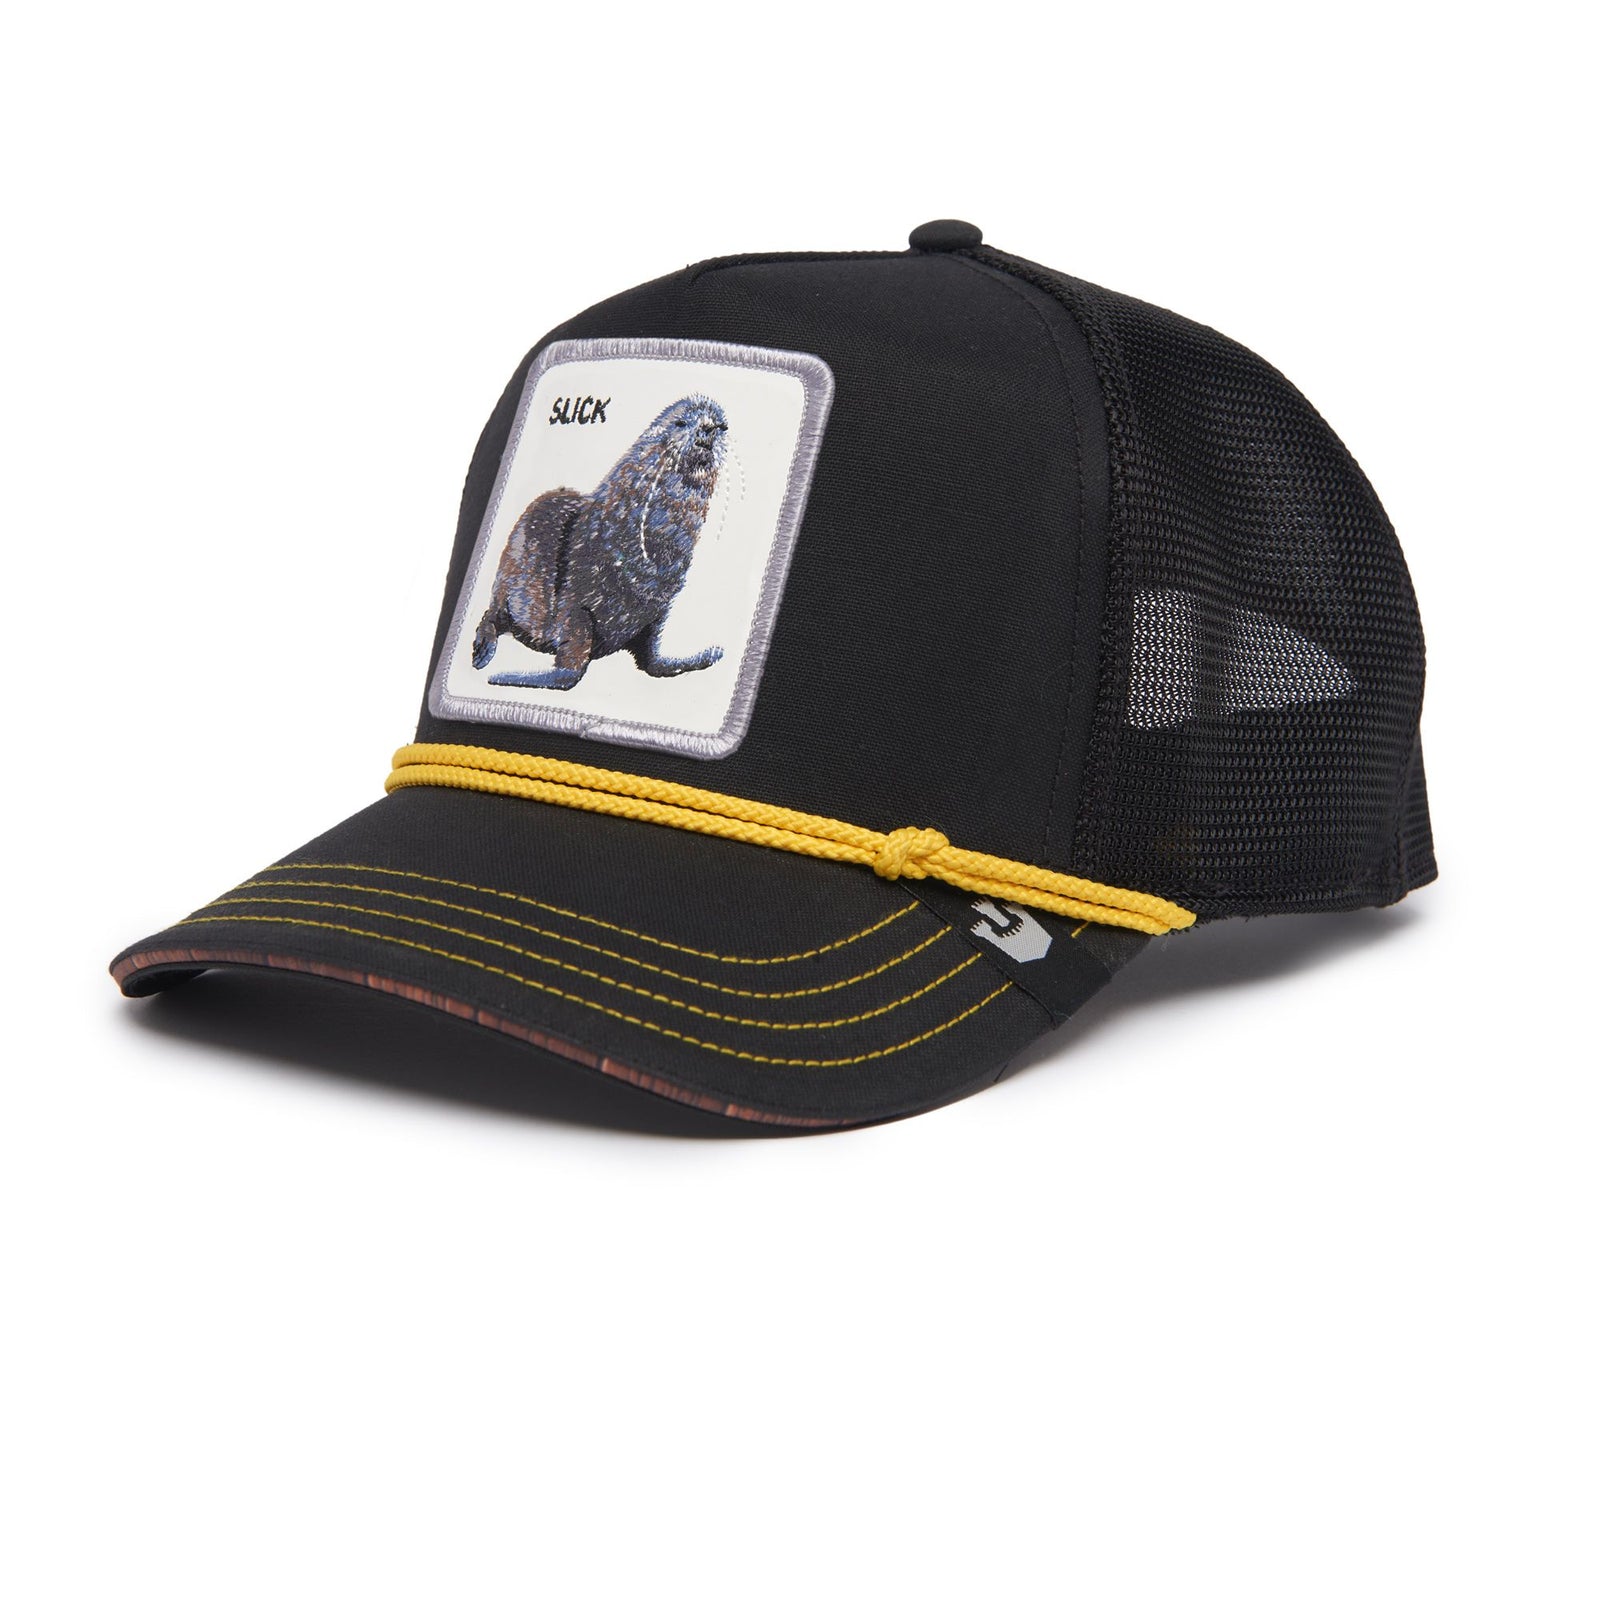 Goorin Seal of Approval Trucker Hat